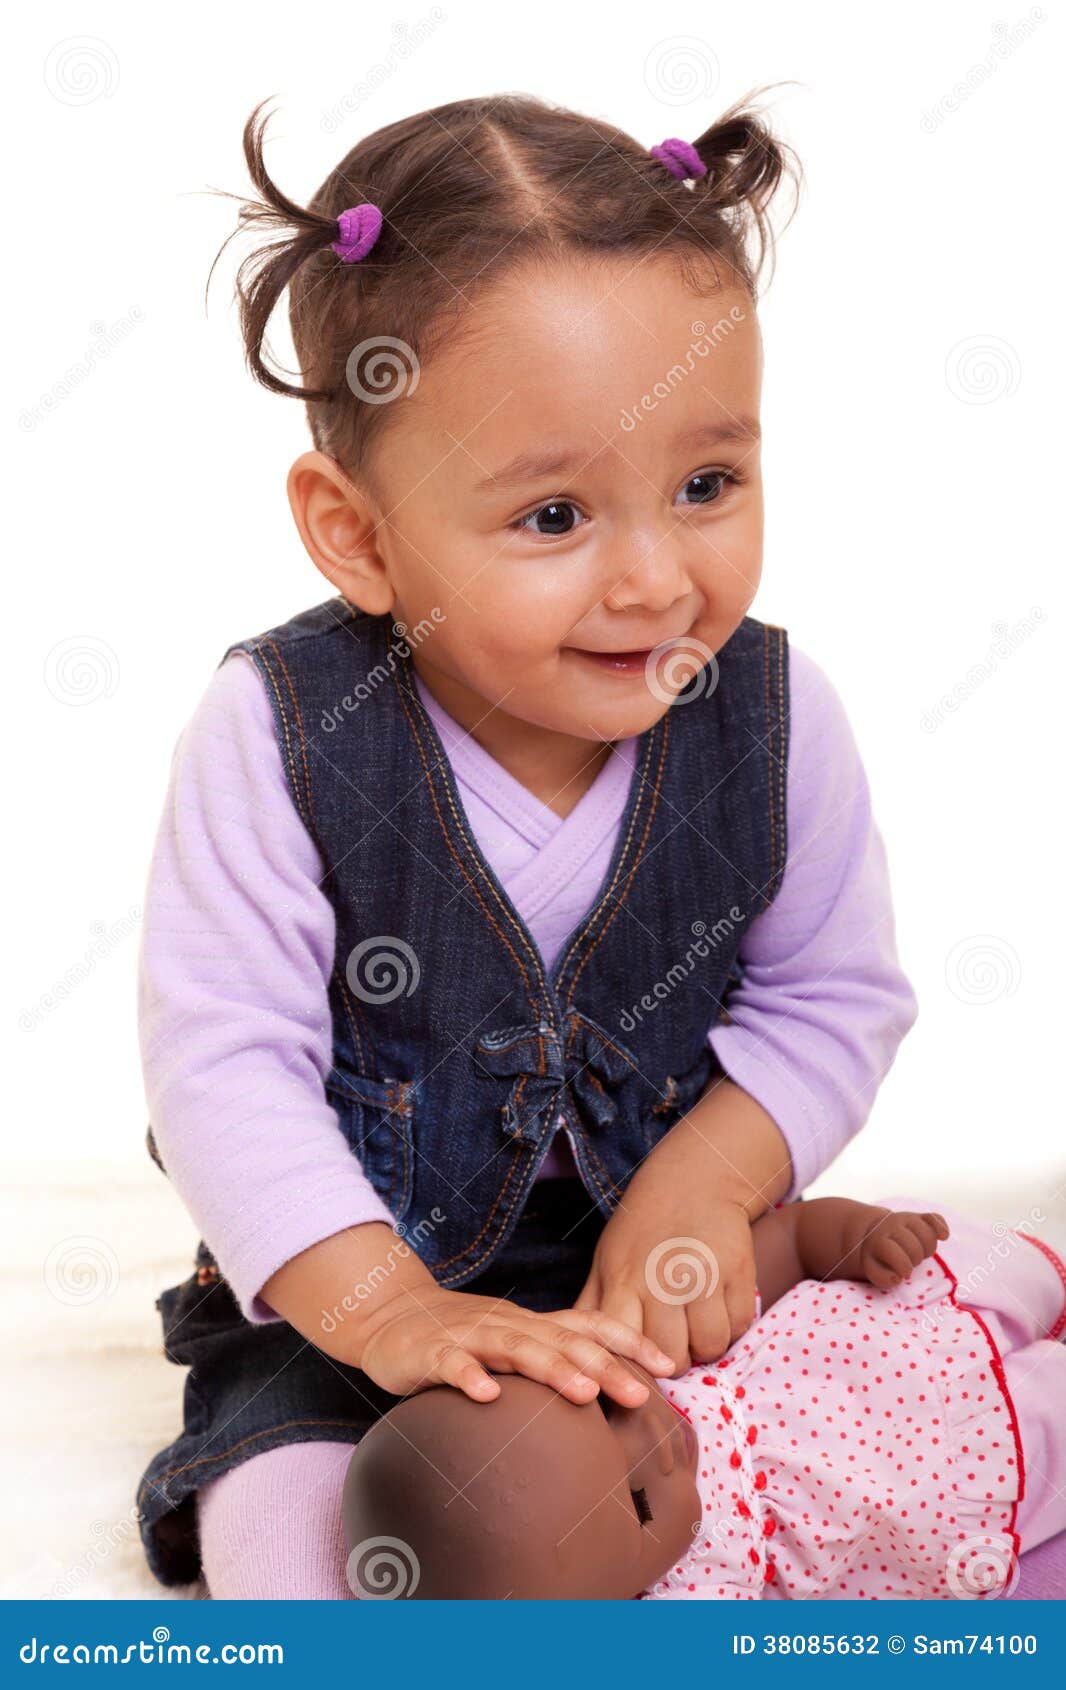 Petites Personnes De Race Noire Mignonnes De Fille De Bebe D Afro Americain Photo Stock Image Du Adorable Bonheur